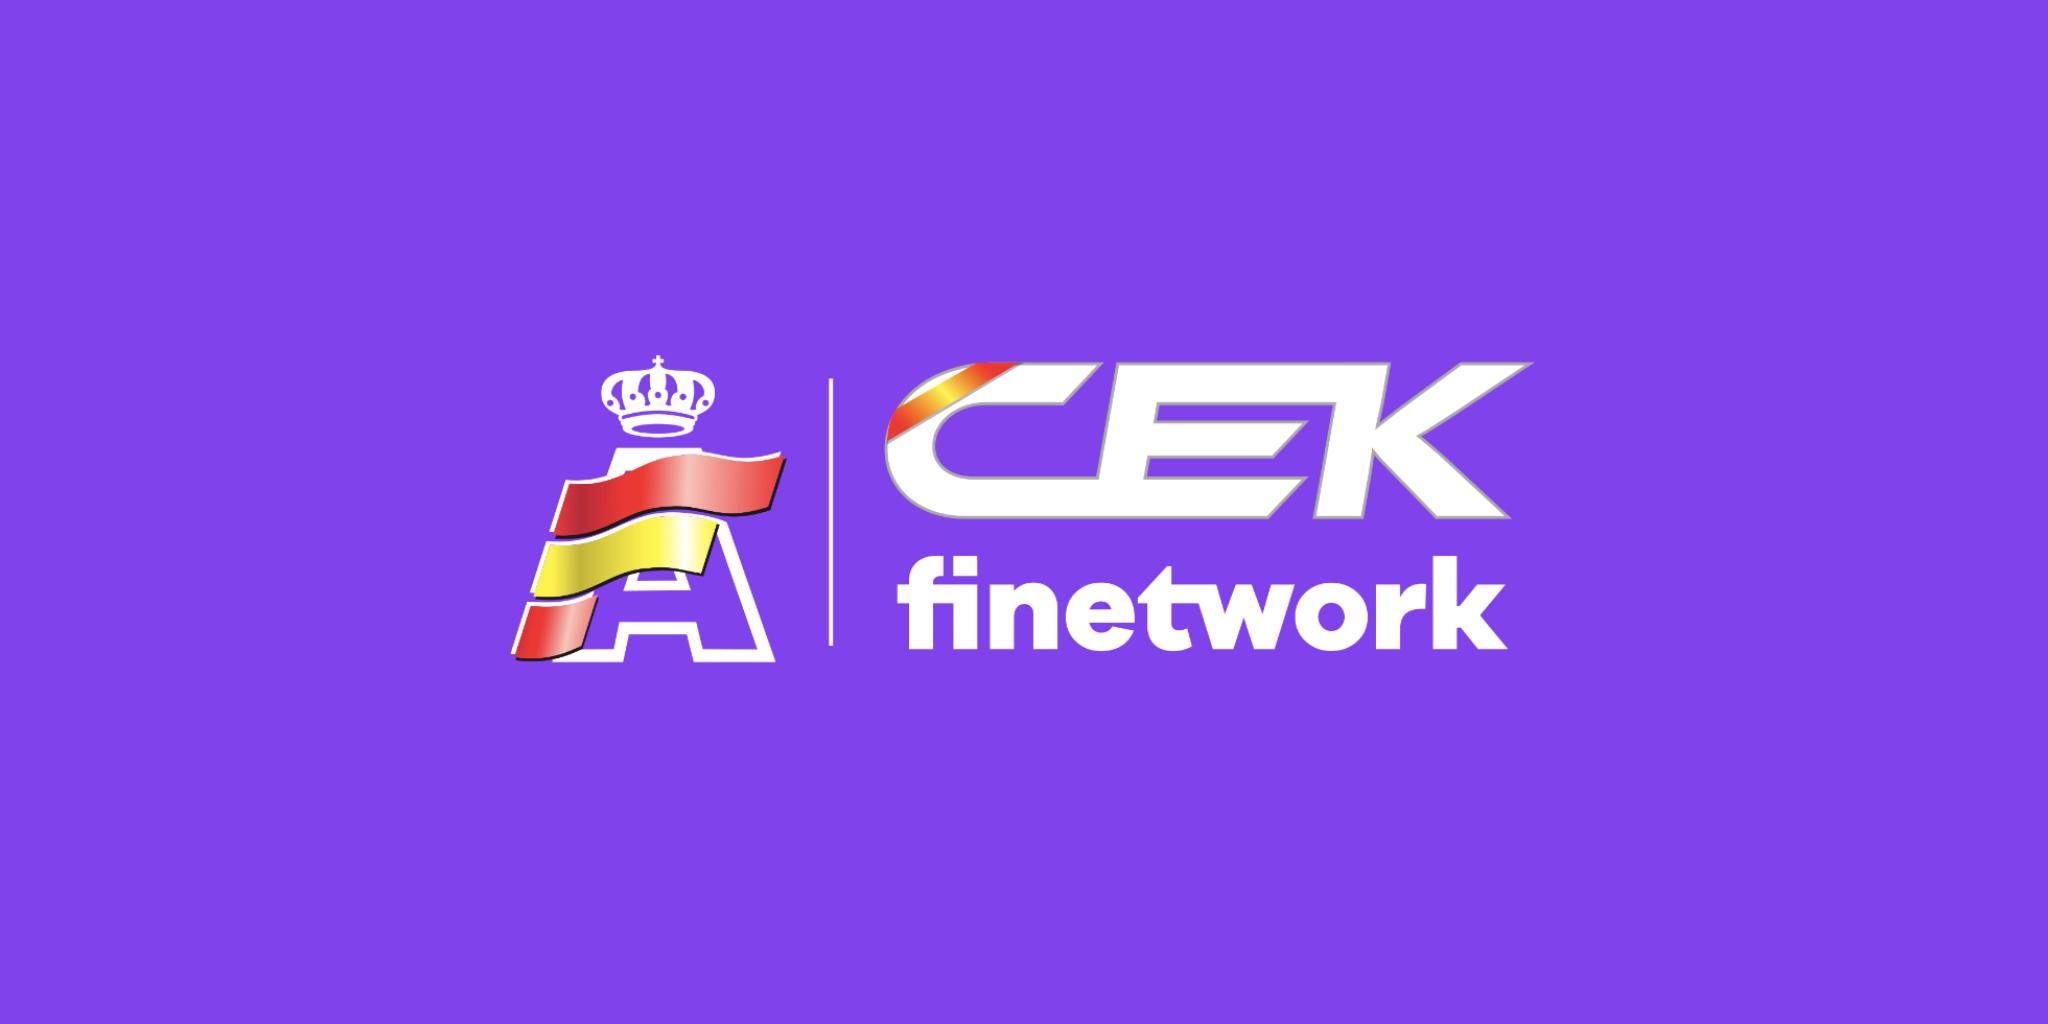 ¿Qué es el CEK Finetwork?